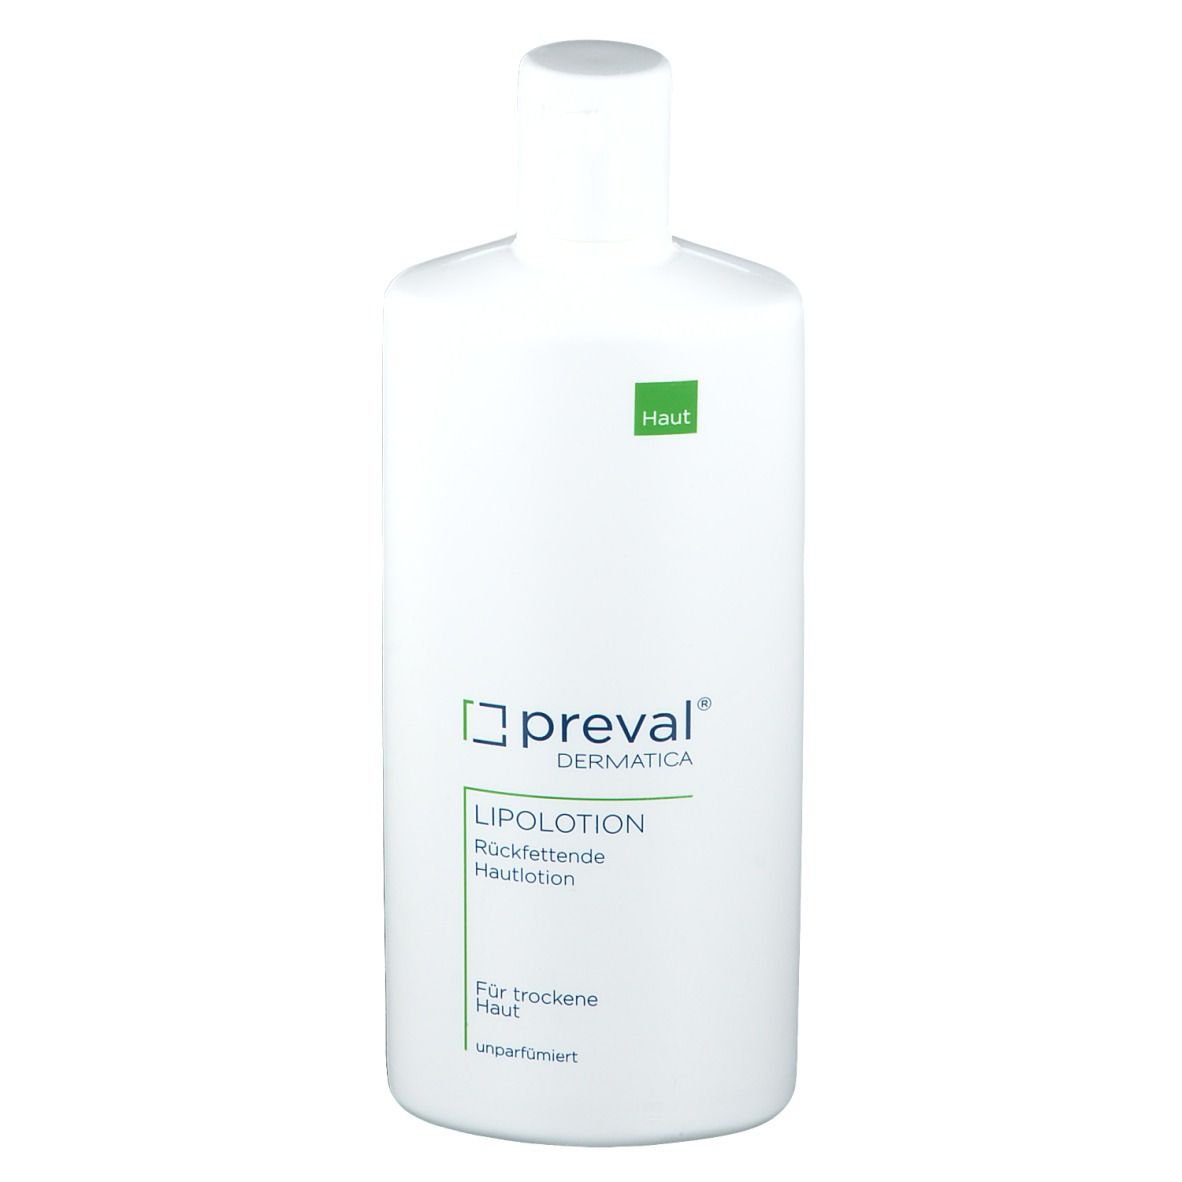 preval® LIPOLOTION Hautpflege Emulsion